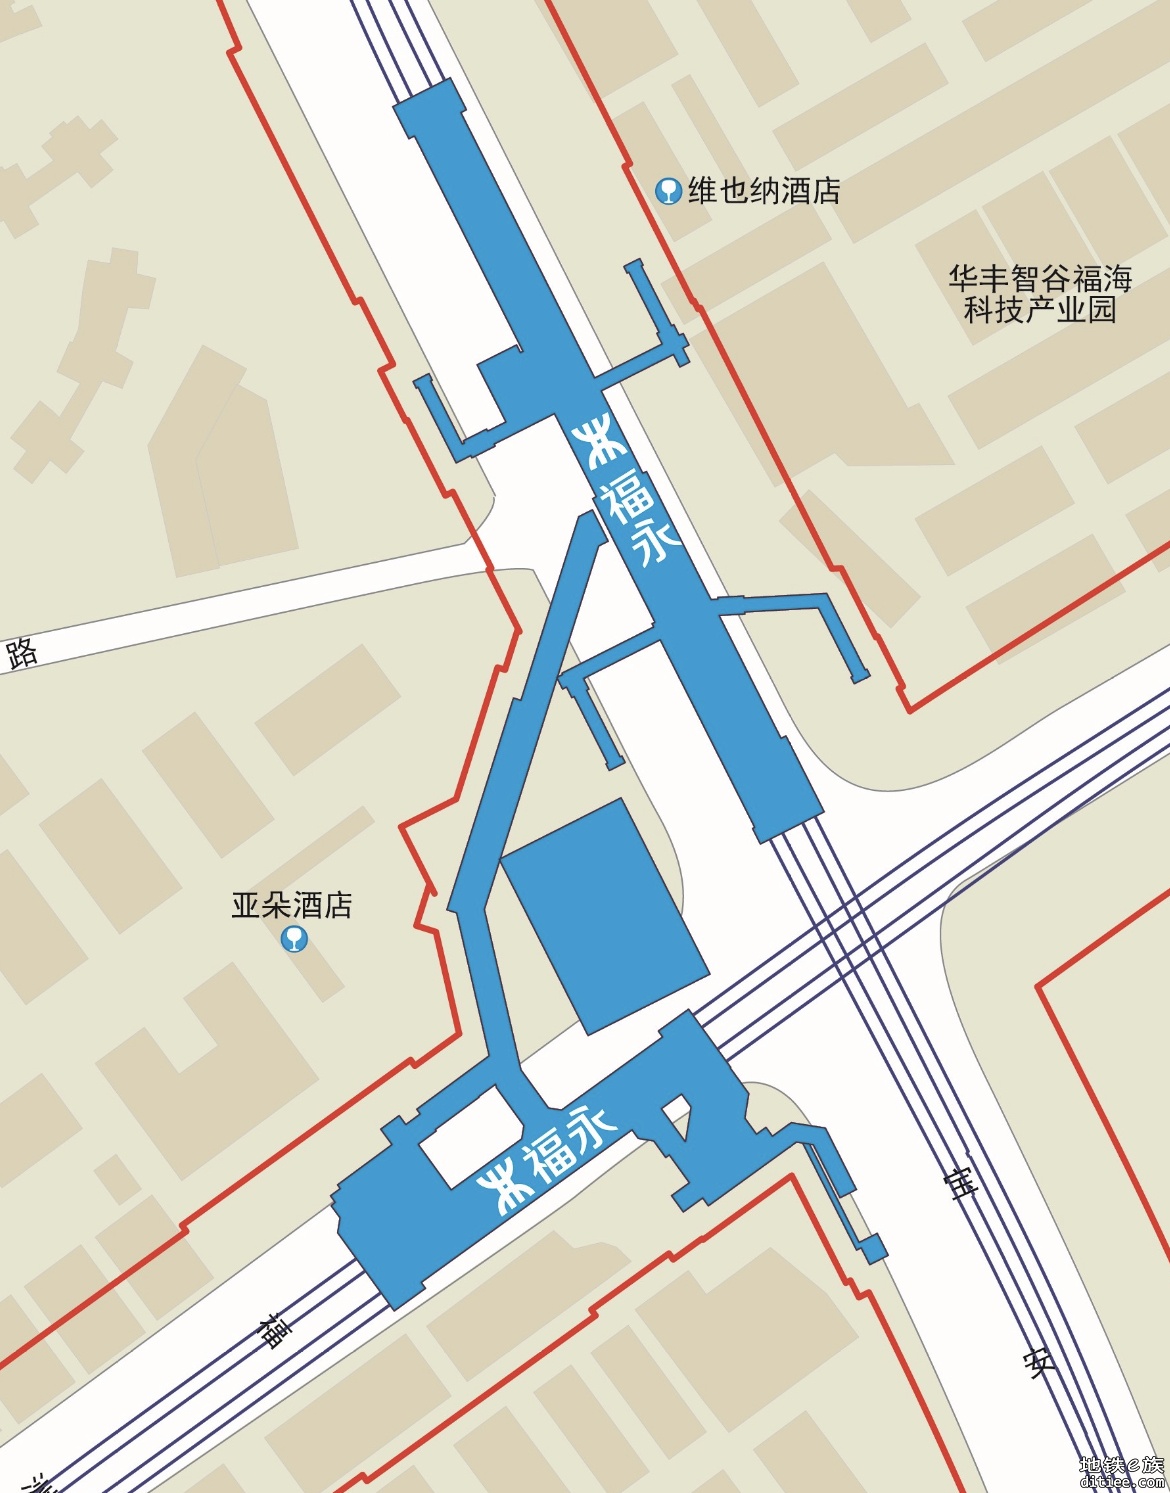 深圳地铁12号线换乘攻略 各换乘站换乘方式及预估时间